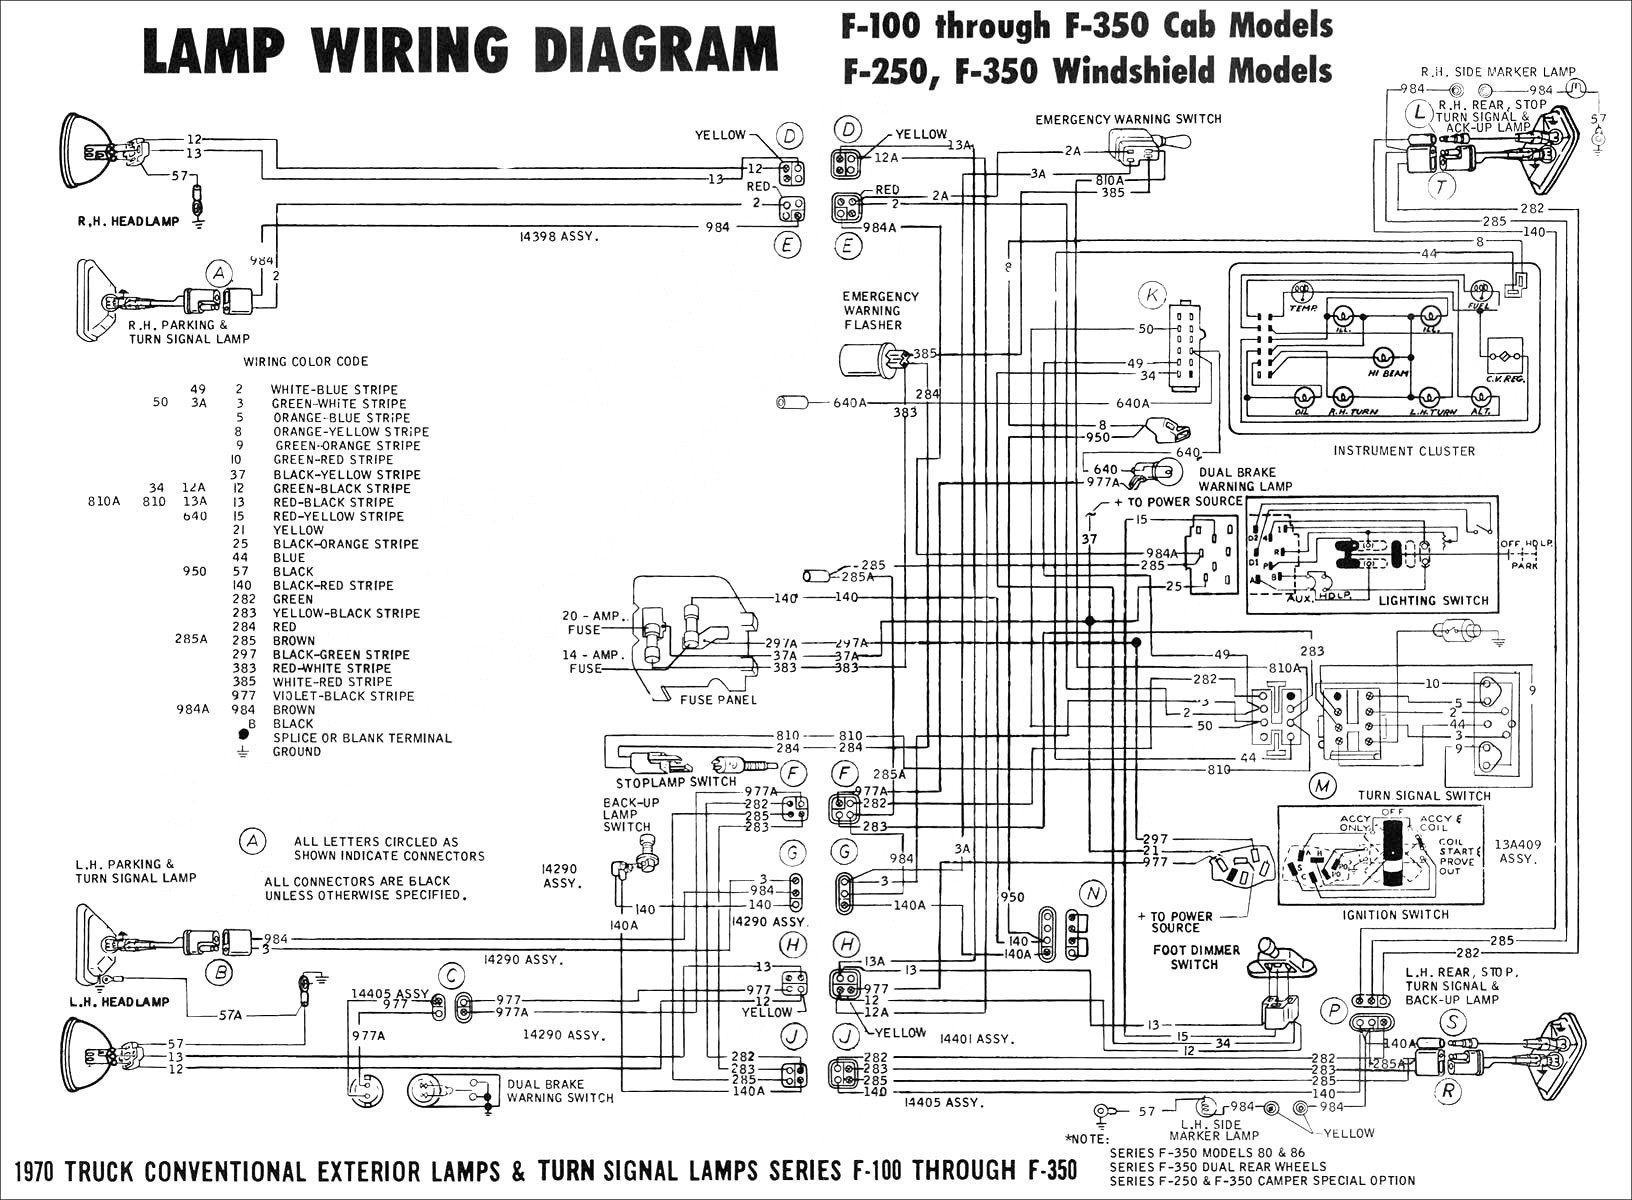 re 24 volt wiring system by eyexer on 06 24 wire center u2022 rh losirekb pw